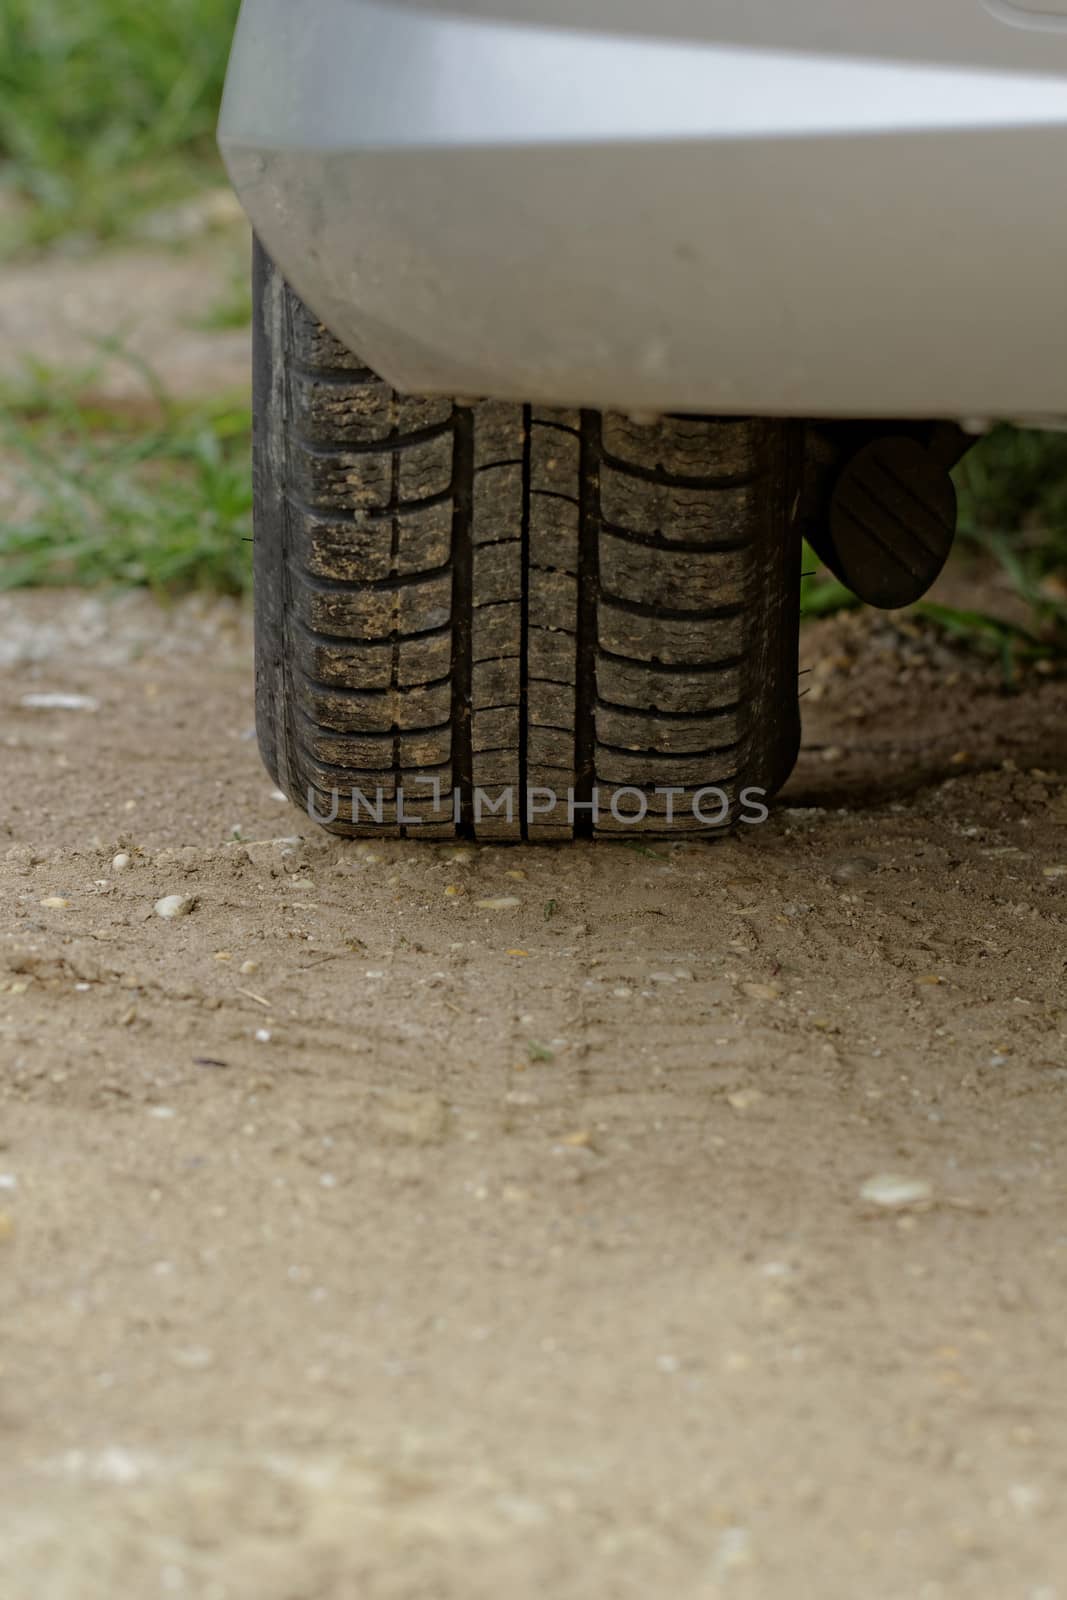 Car wheels on a dusty road detail by NagyDodo